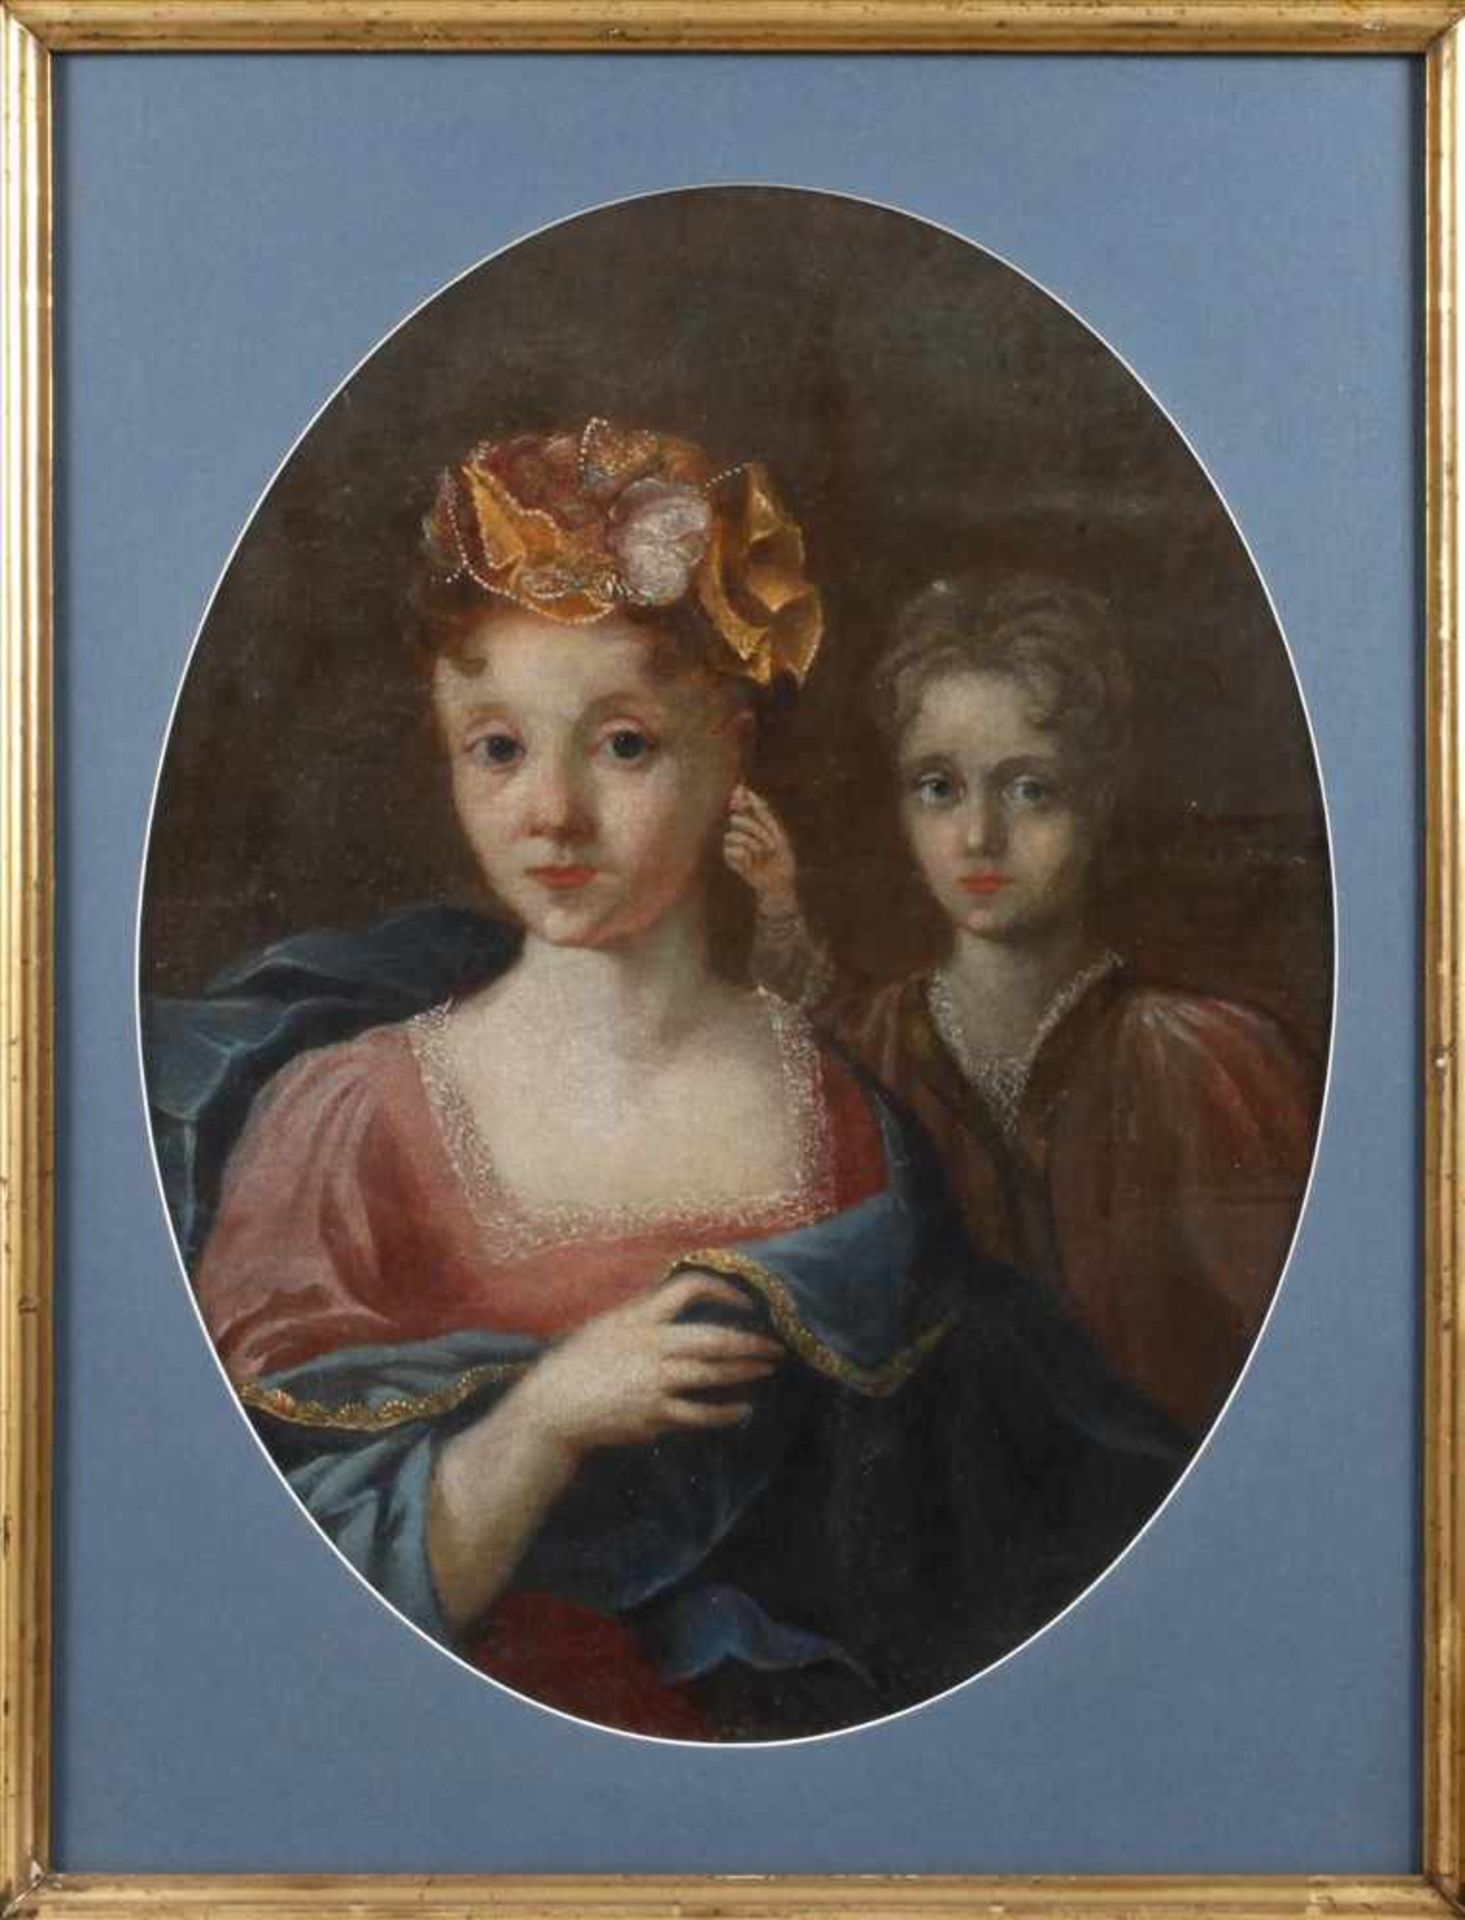 Barockes MädchenportraitBrustbildnis einer jungen Frau in herrschaftlicher Robe, vor dunklem